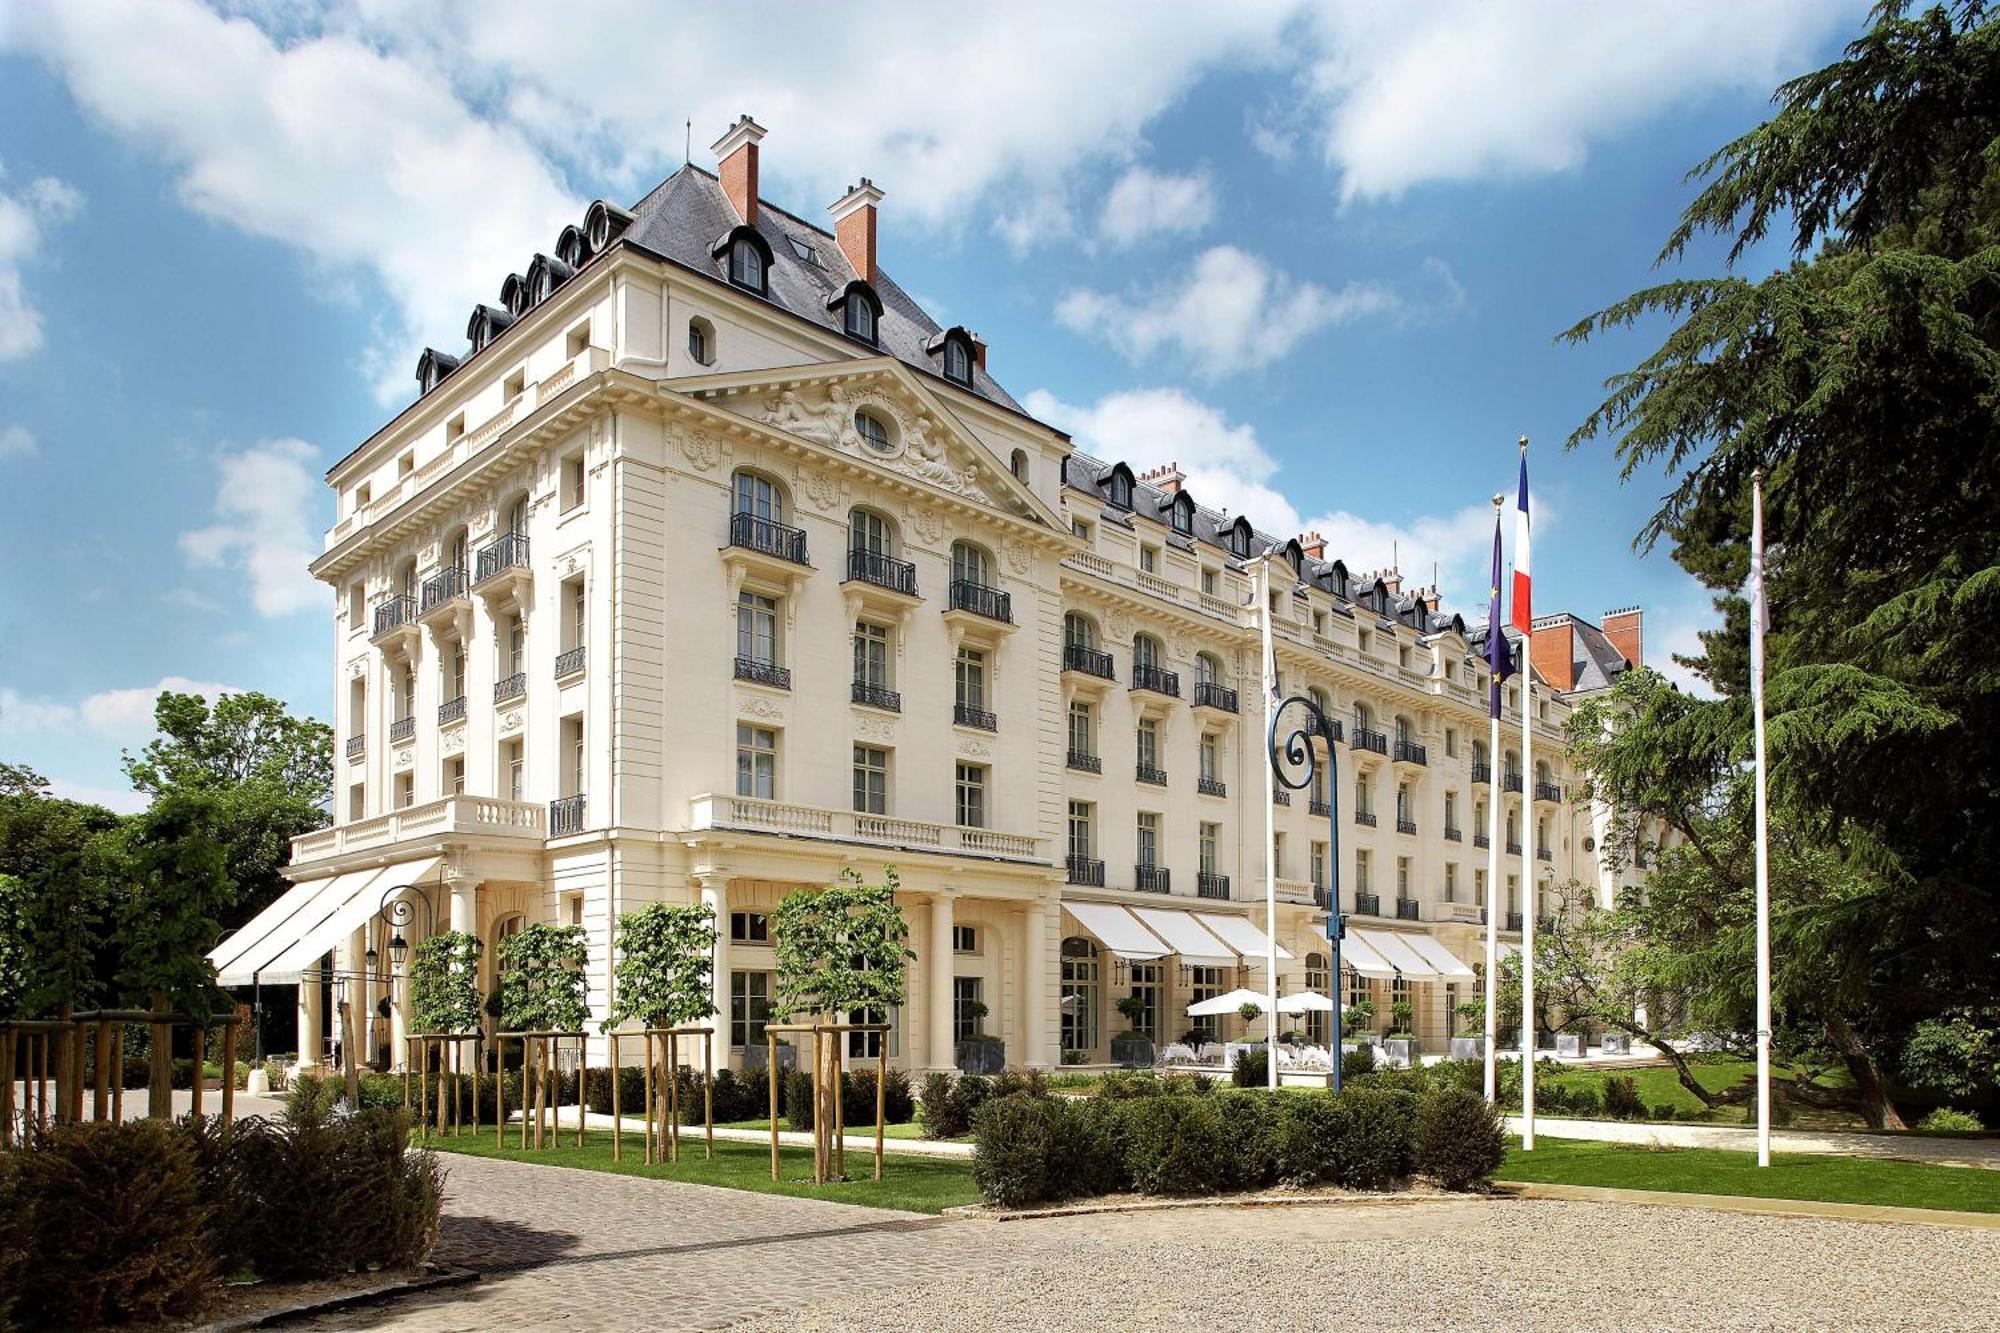 Waldorf Astoria Versailles - Trianon Palace Esterno foto